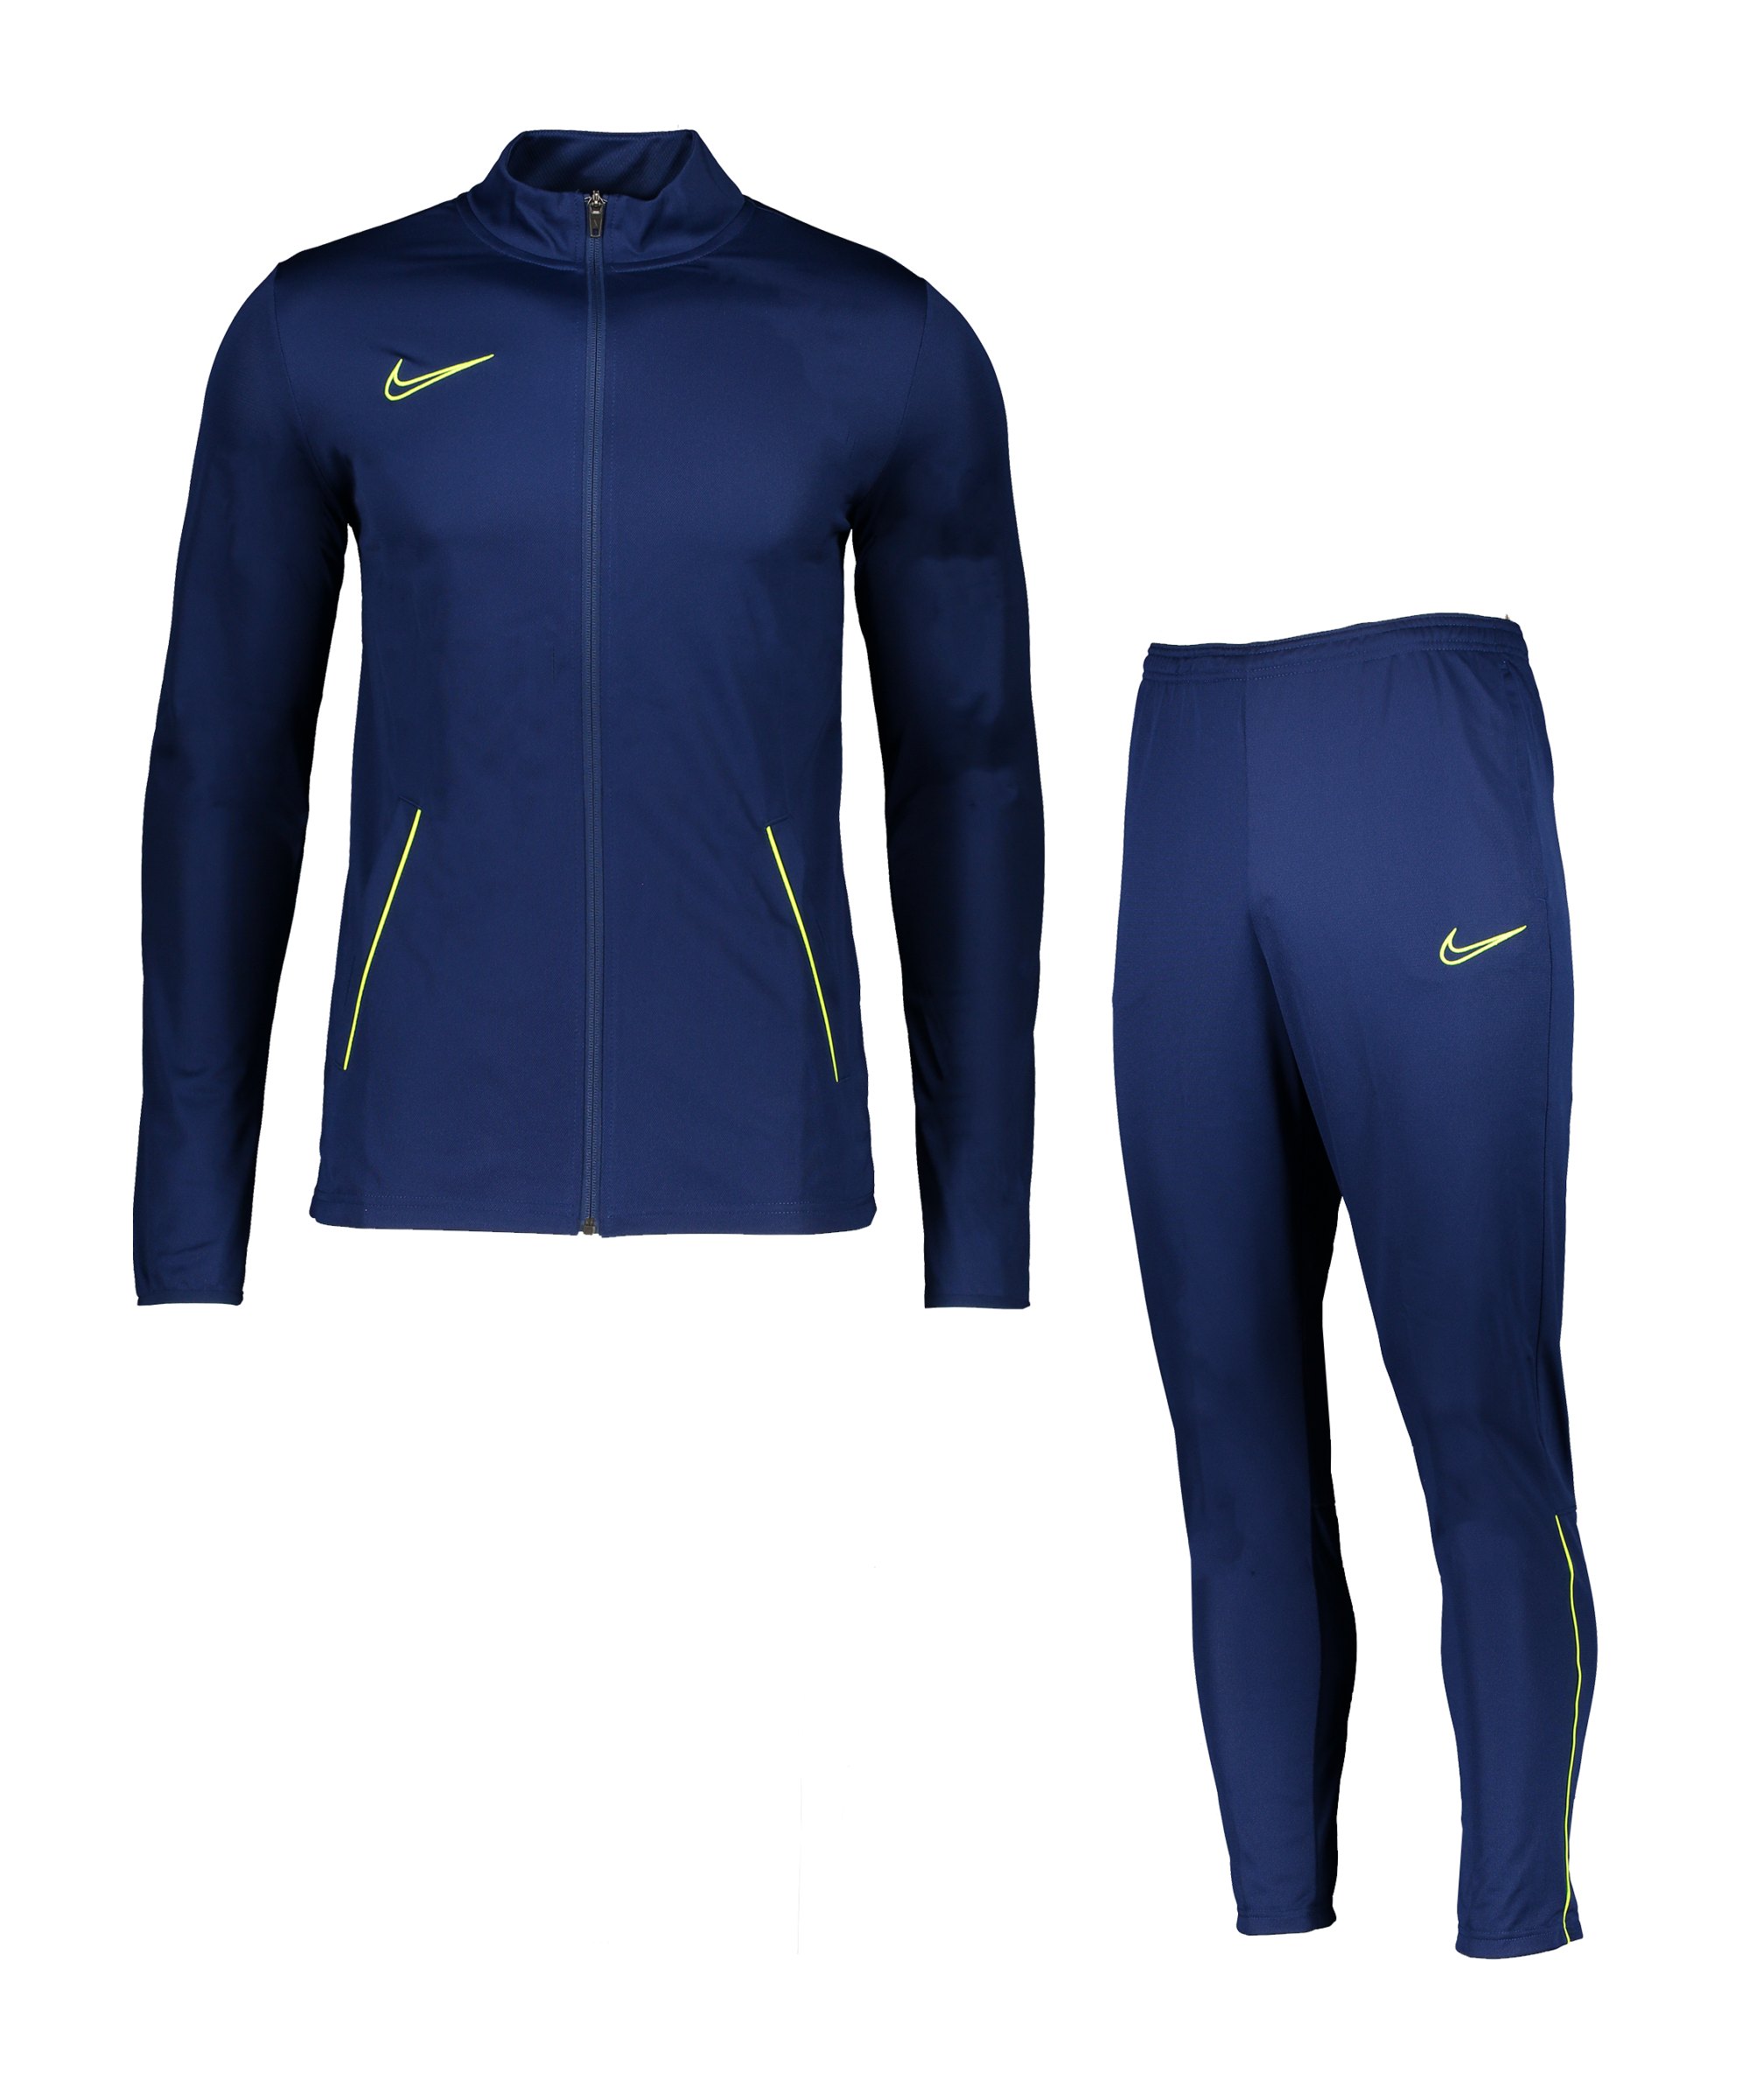 Nike Academy 21 Trainingsanzug Blau Gelb F492 - blau